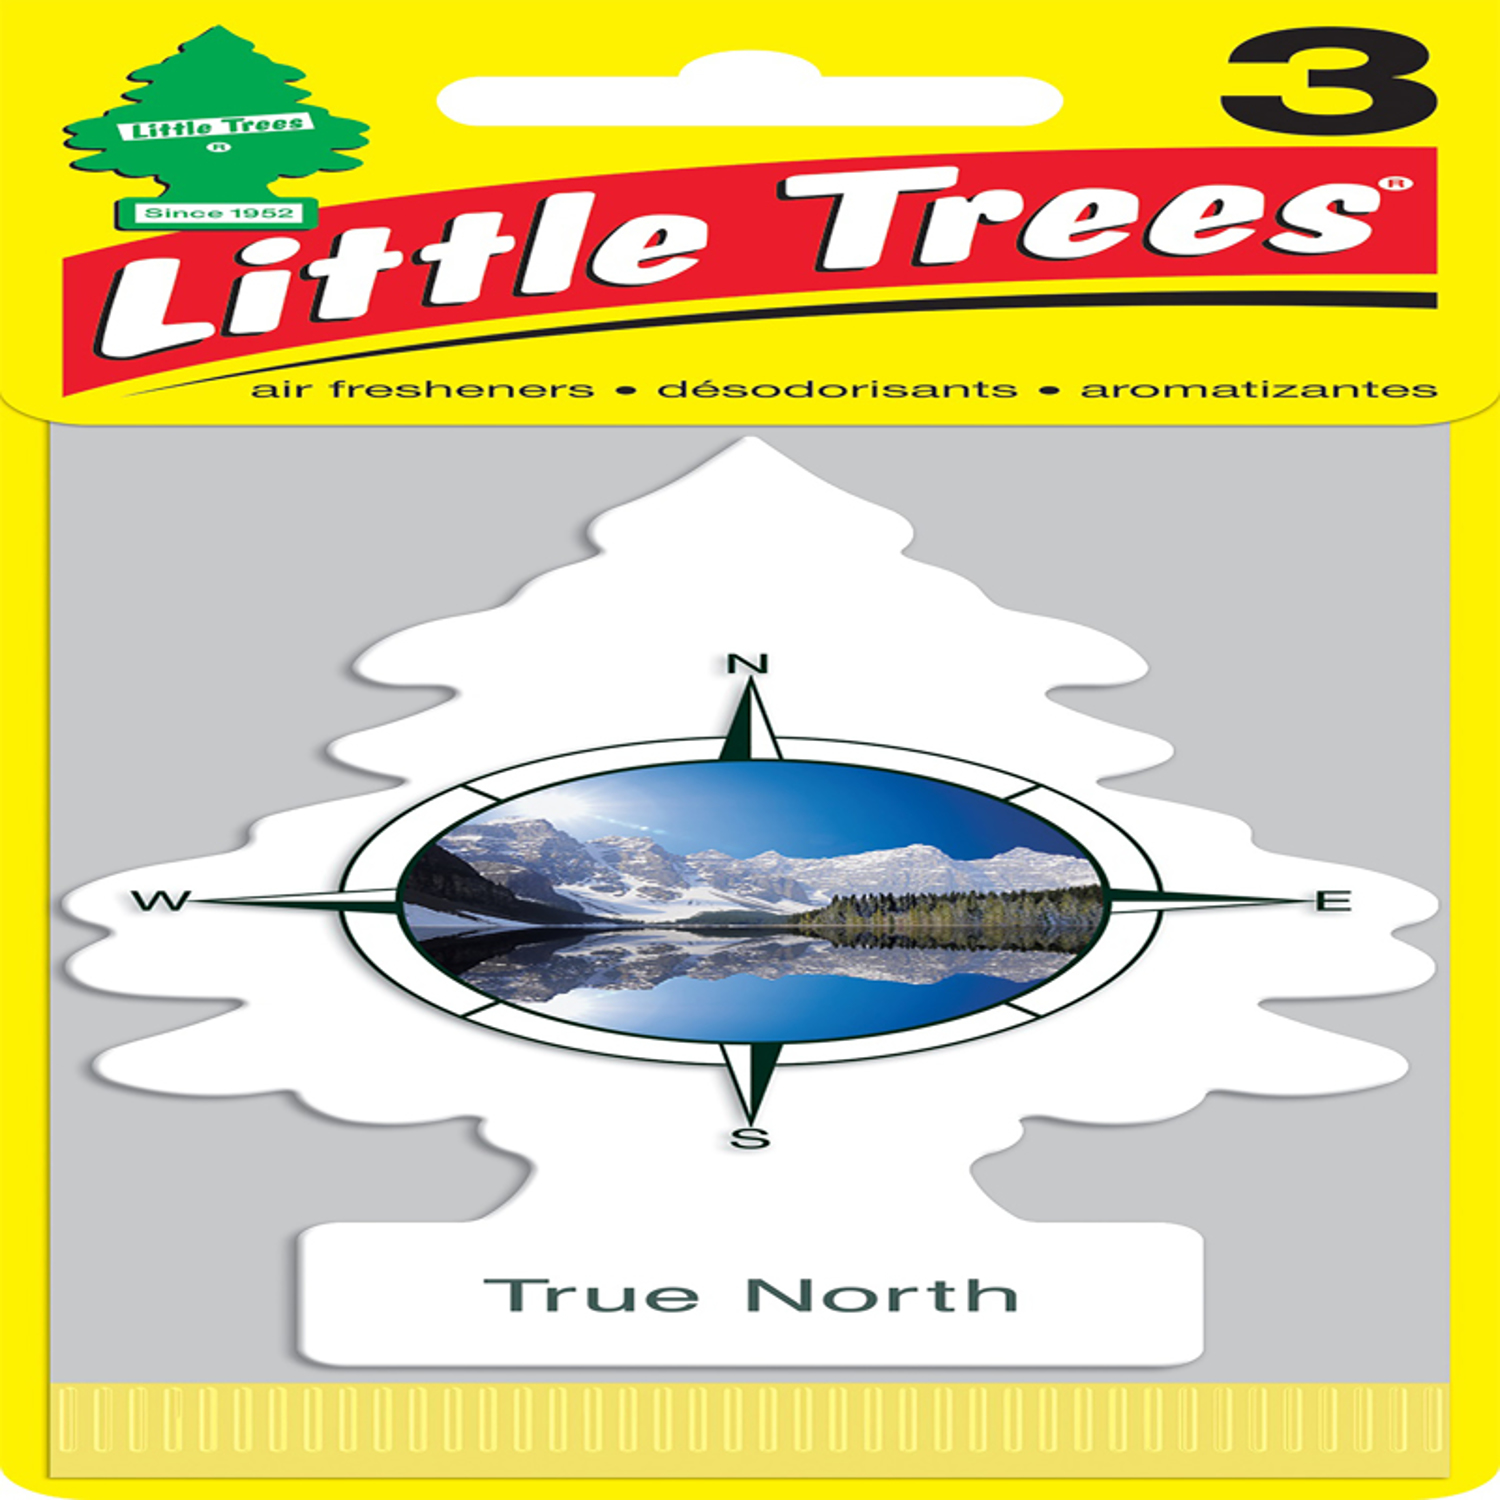 Little Trees Car Air Freshener 1 pk - Ace Hardware